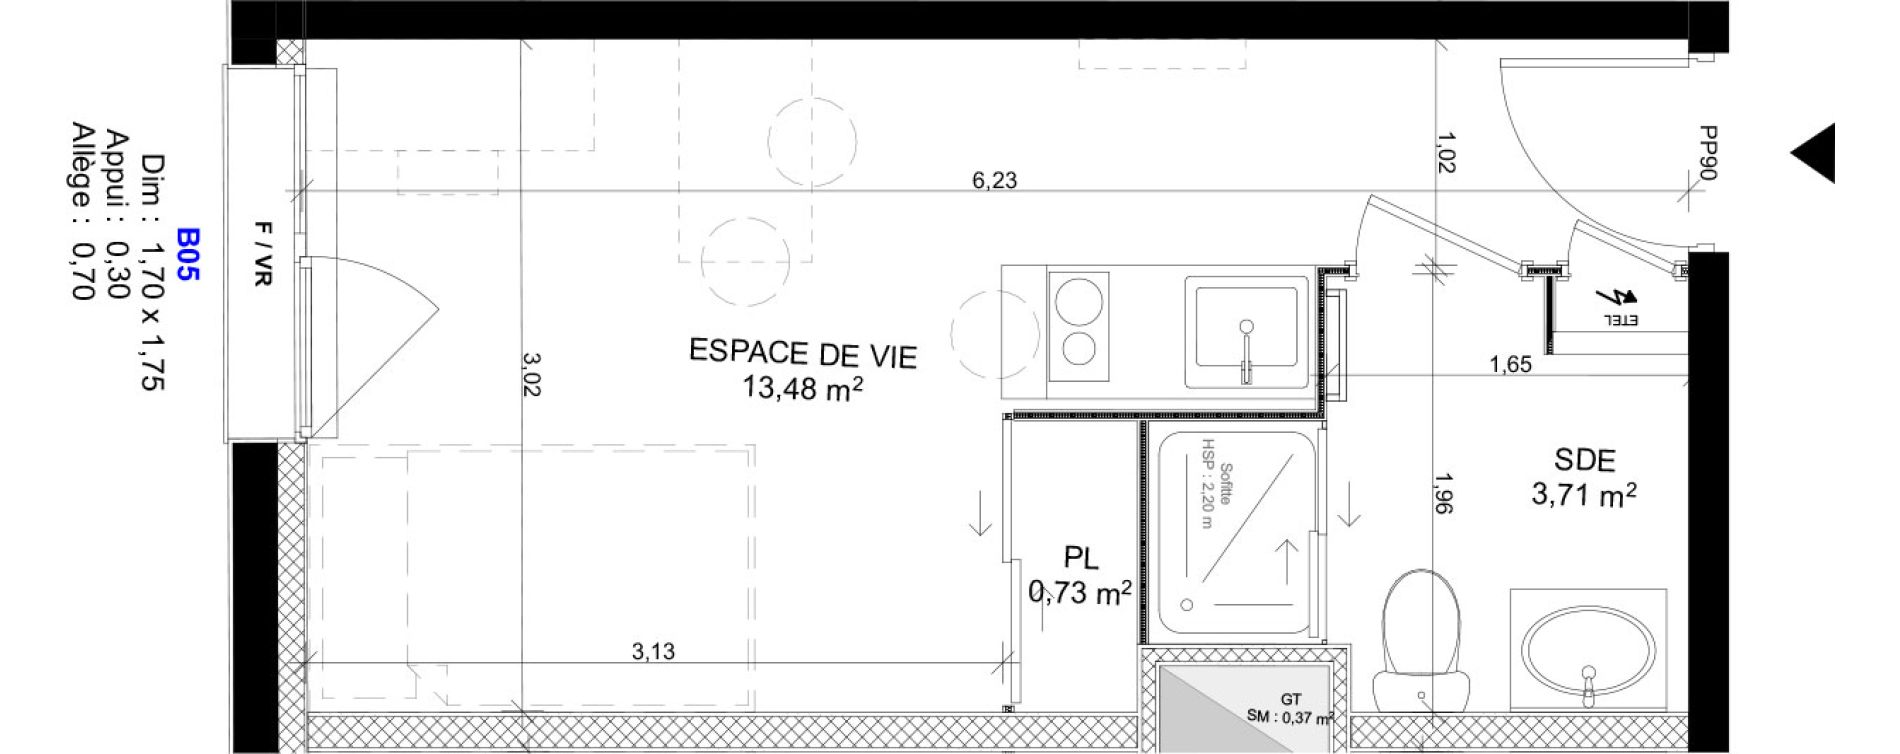 Appartement T1 meubl&eacute; de 17,92 m2 au Havre Sainte marie - saint leon